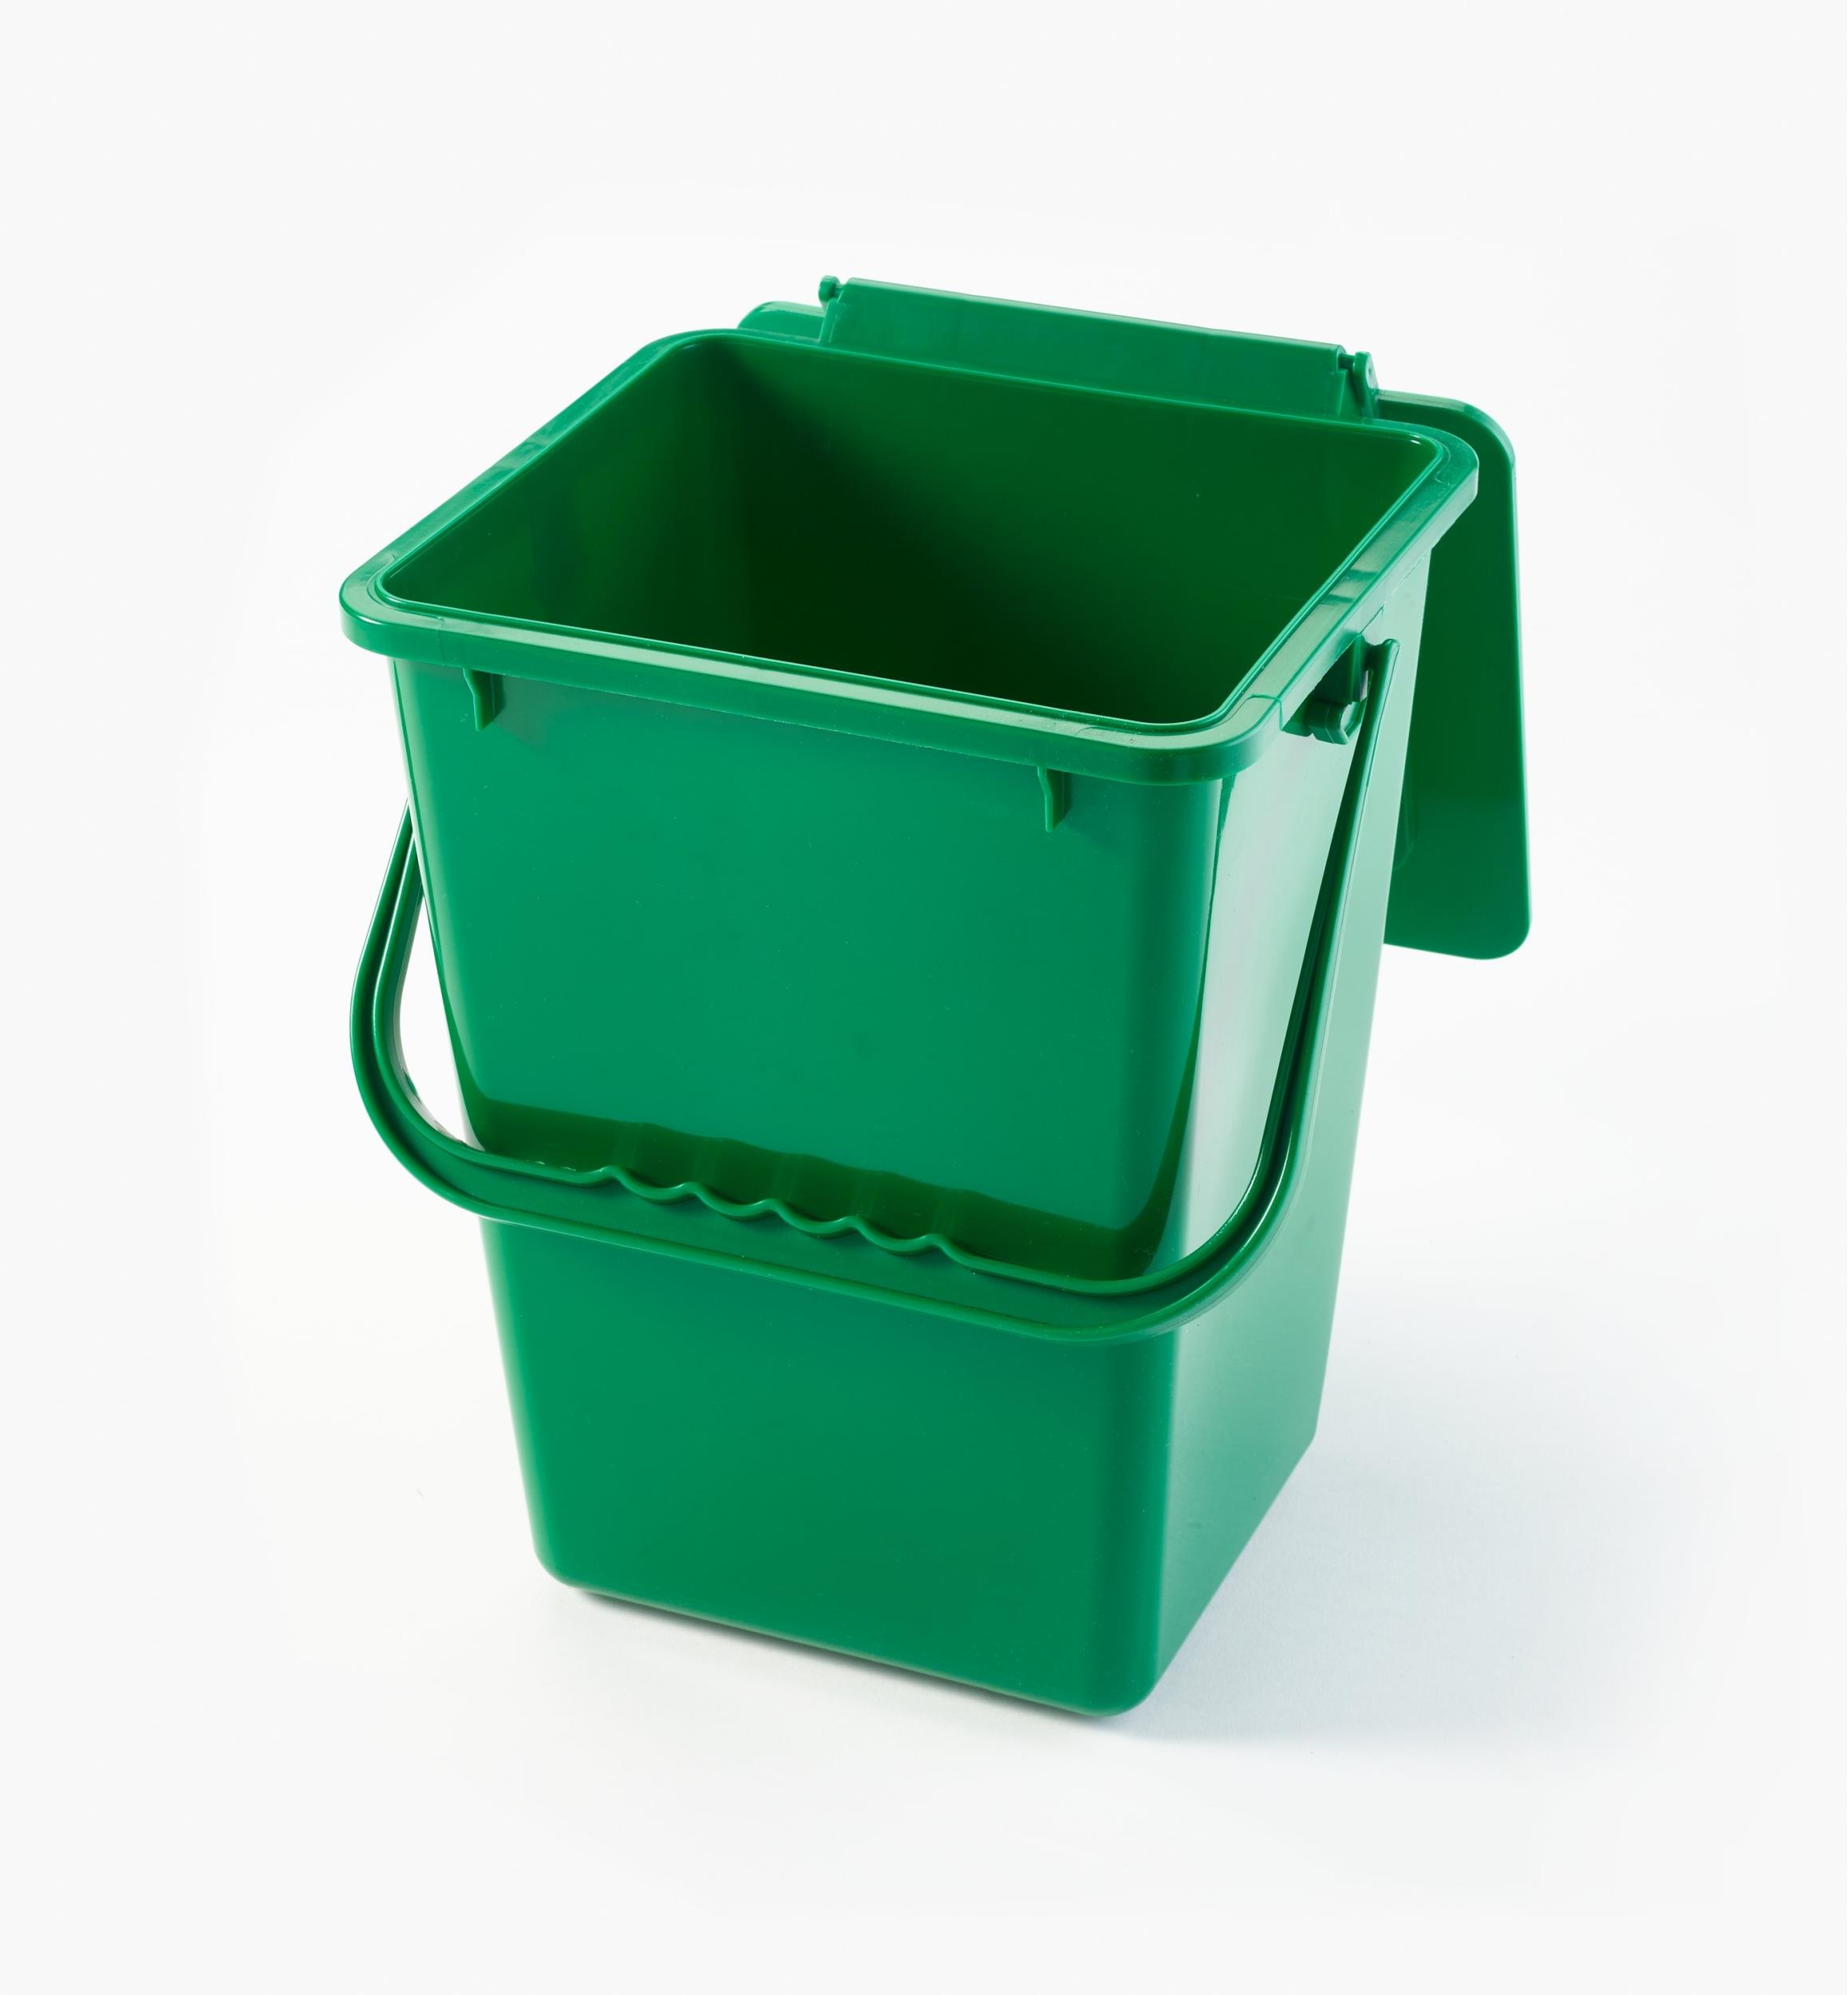 Vaorwne Compost Bin Cuisine Compost Seau Compost Caddy en Acier Inoxydable Cuisine Composter Comptoir Int/éRieur Cuisine Recyclage Poubelle